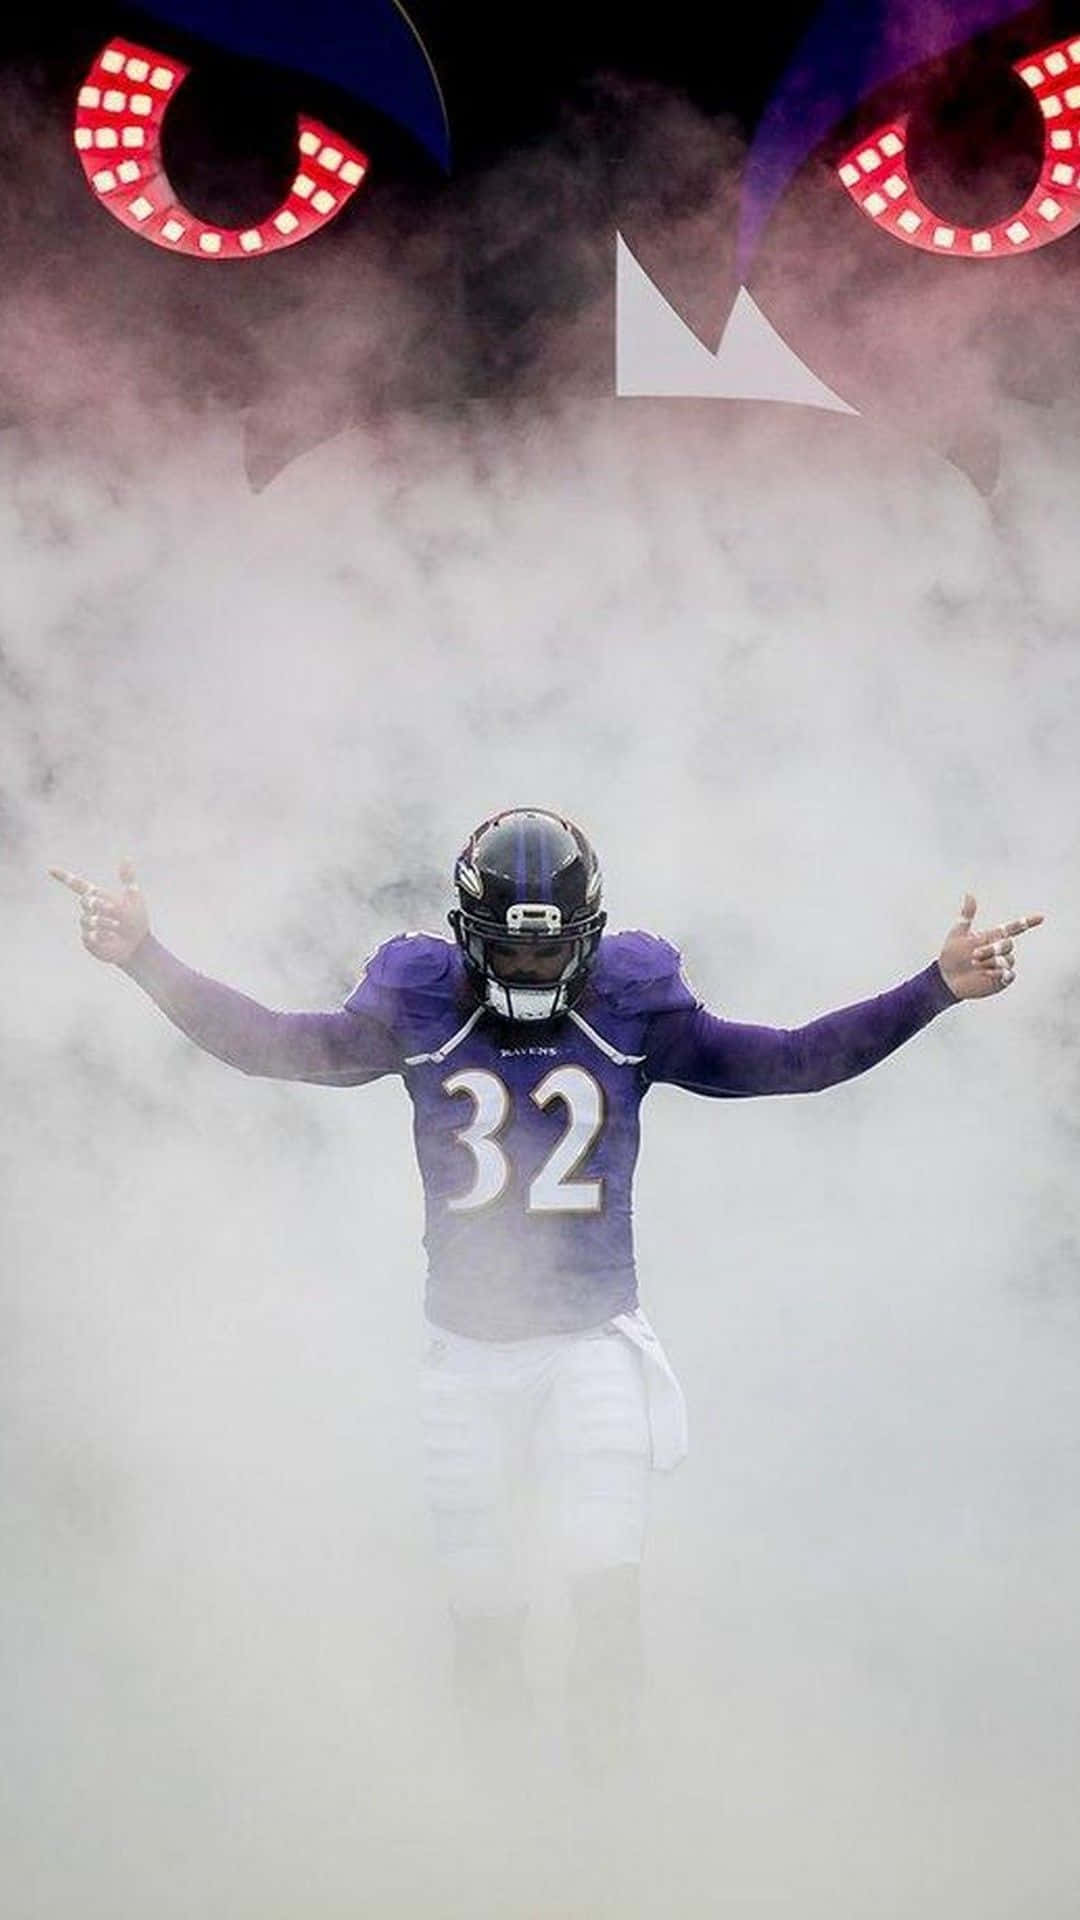 Zeigensie Ihren Stolz Für Die Baltimore Ravens!